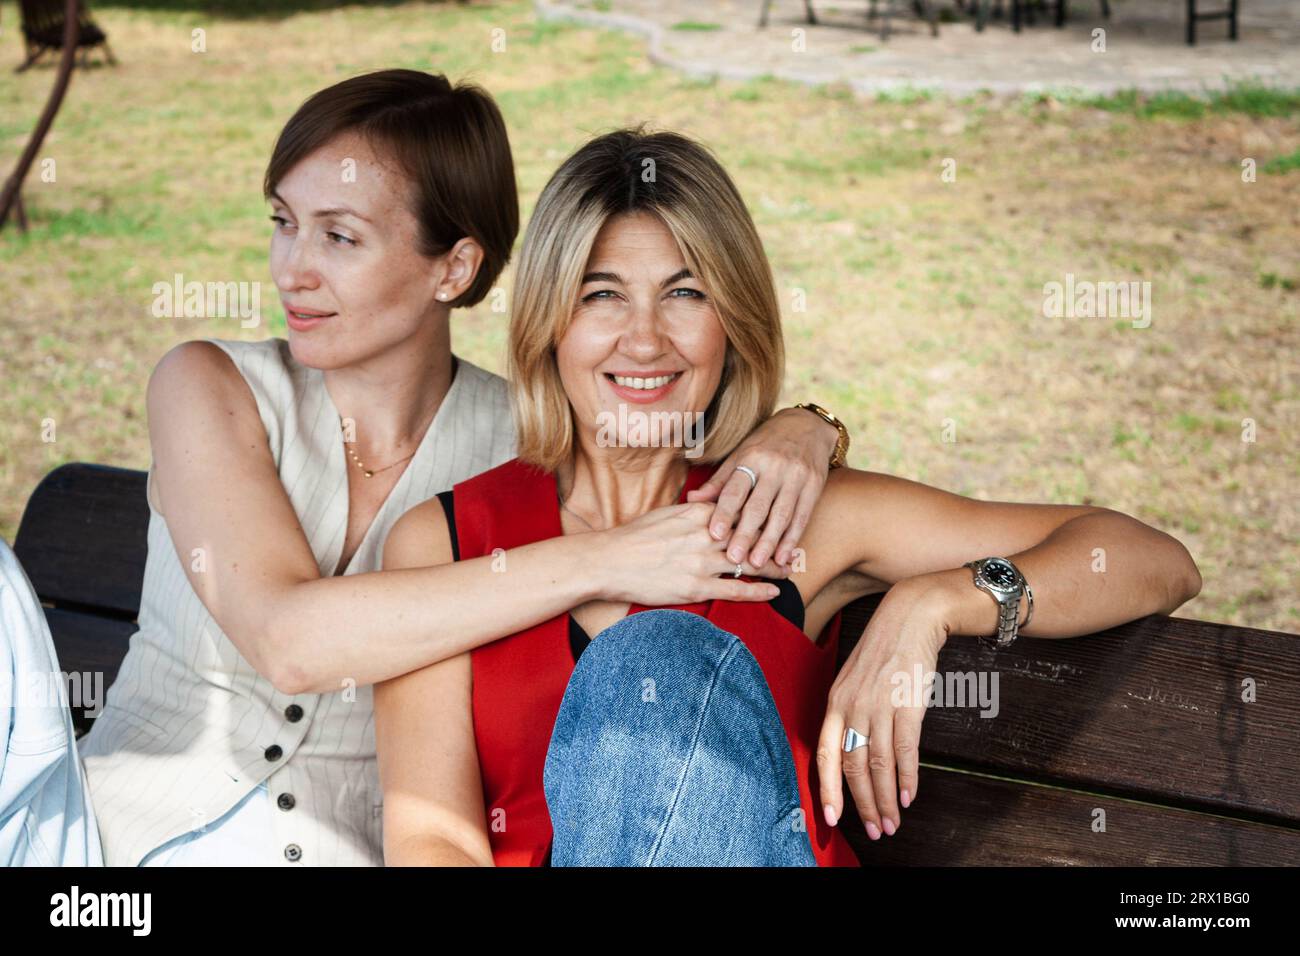 deux femmes à la mode assises sur un banc en bois, à l'extérieur Banque D'Images